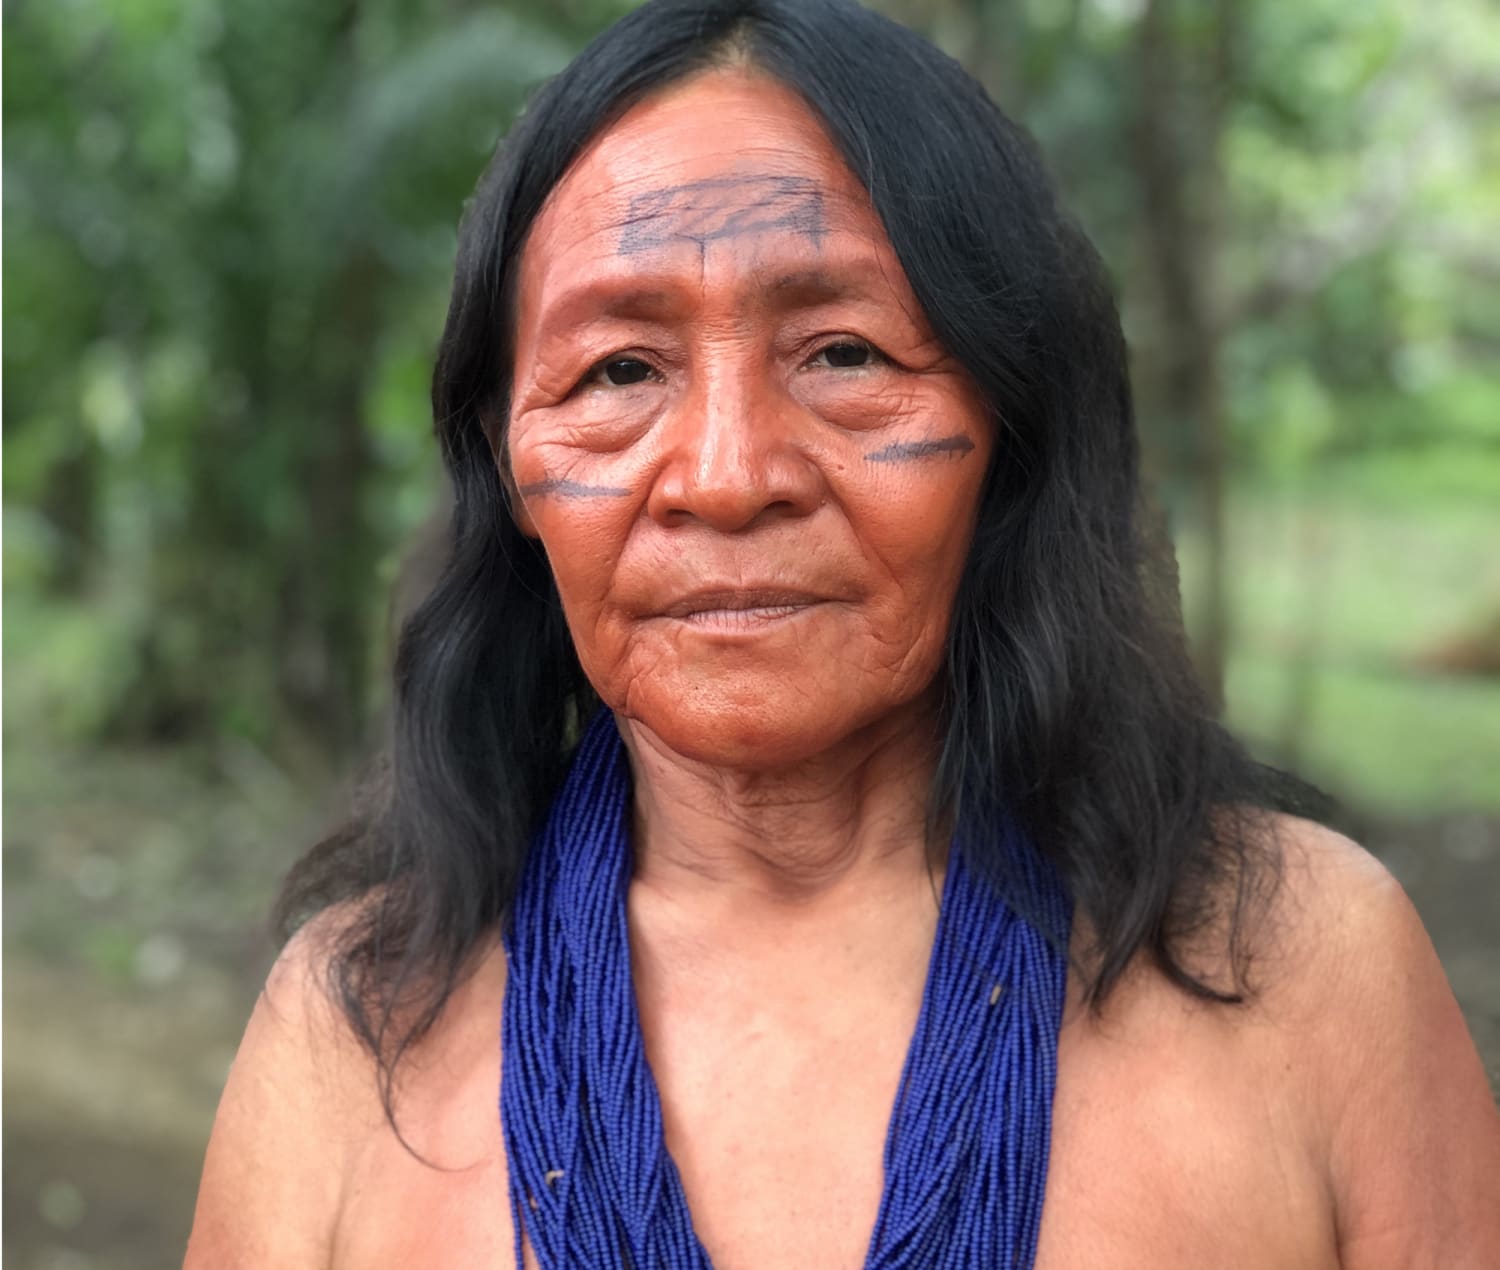 Young Amazon Tribal Girls